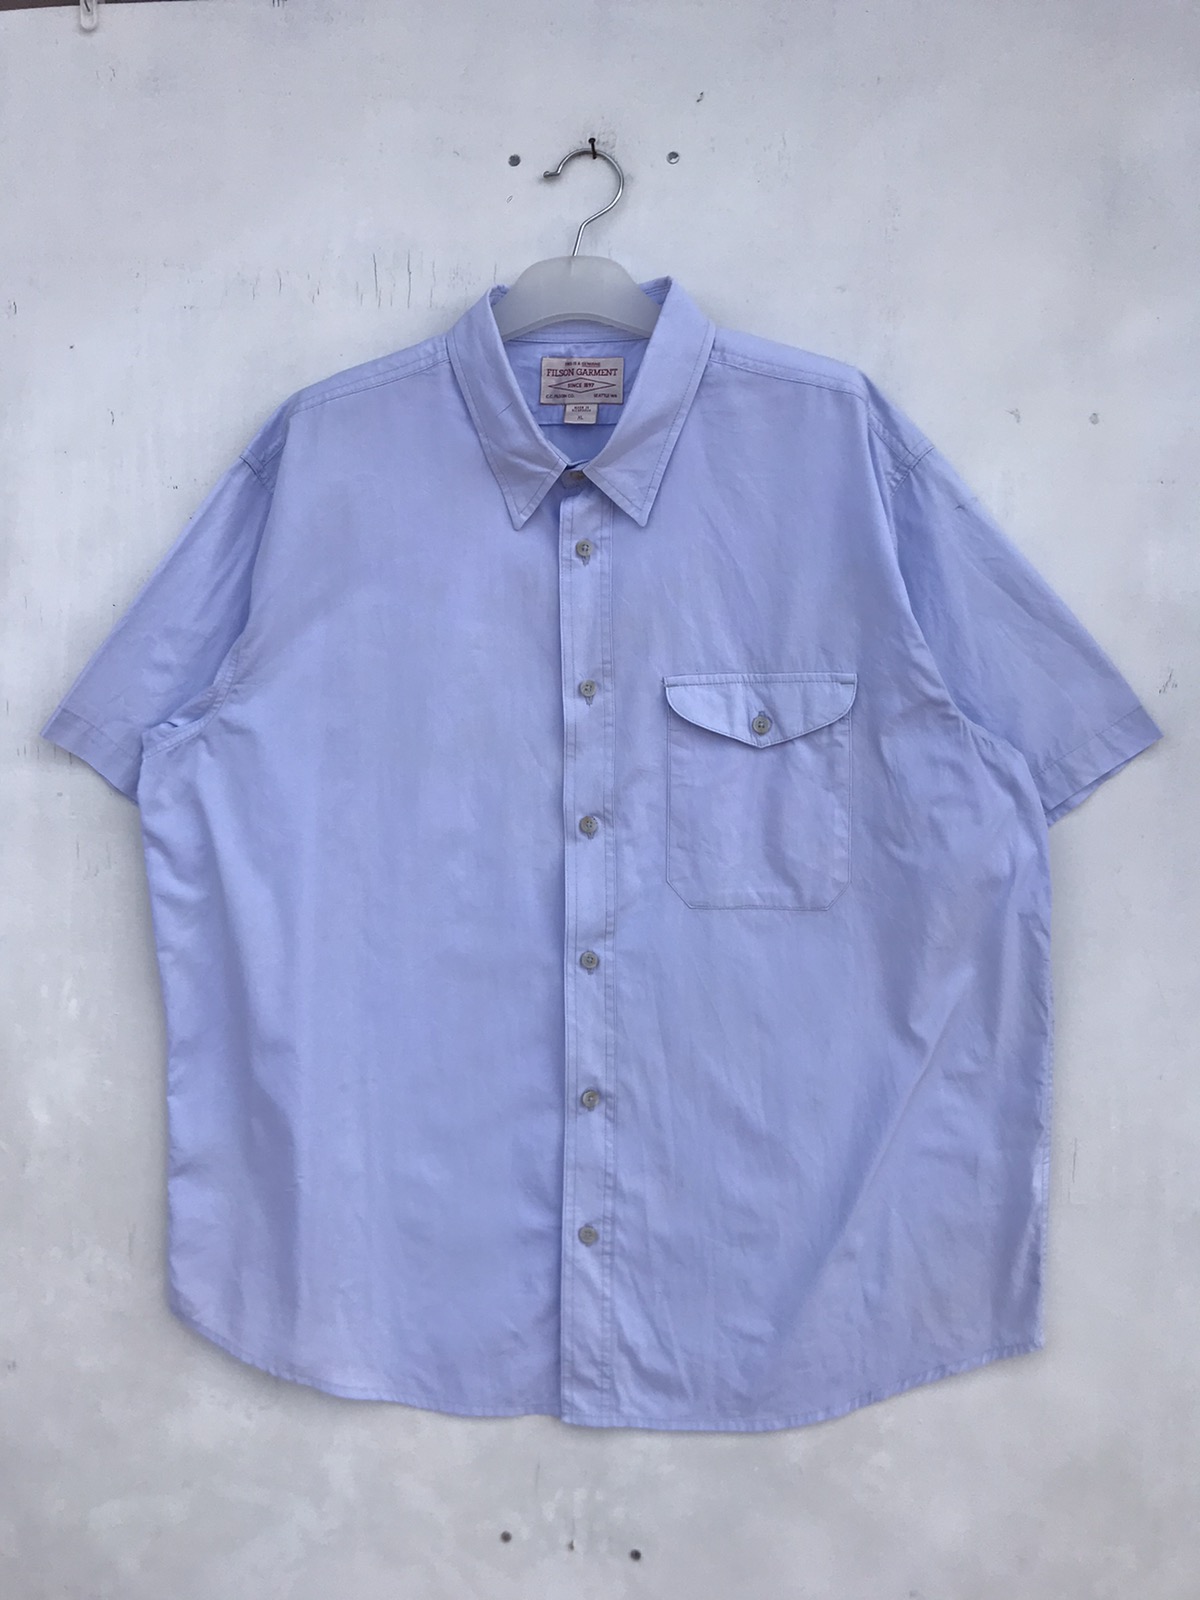 Filson Garment Shirt - 1